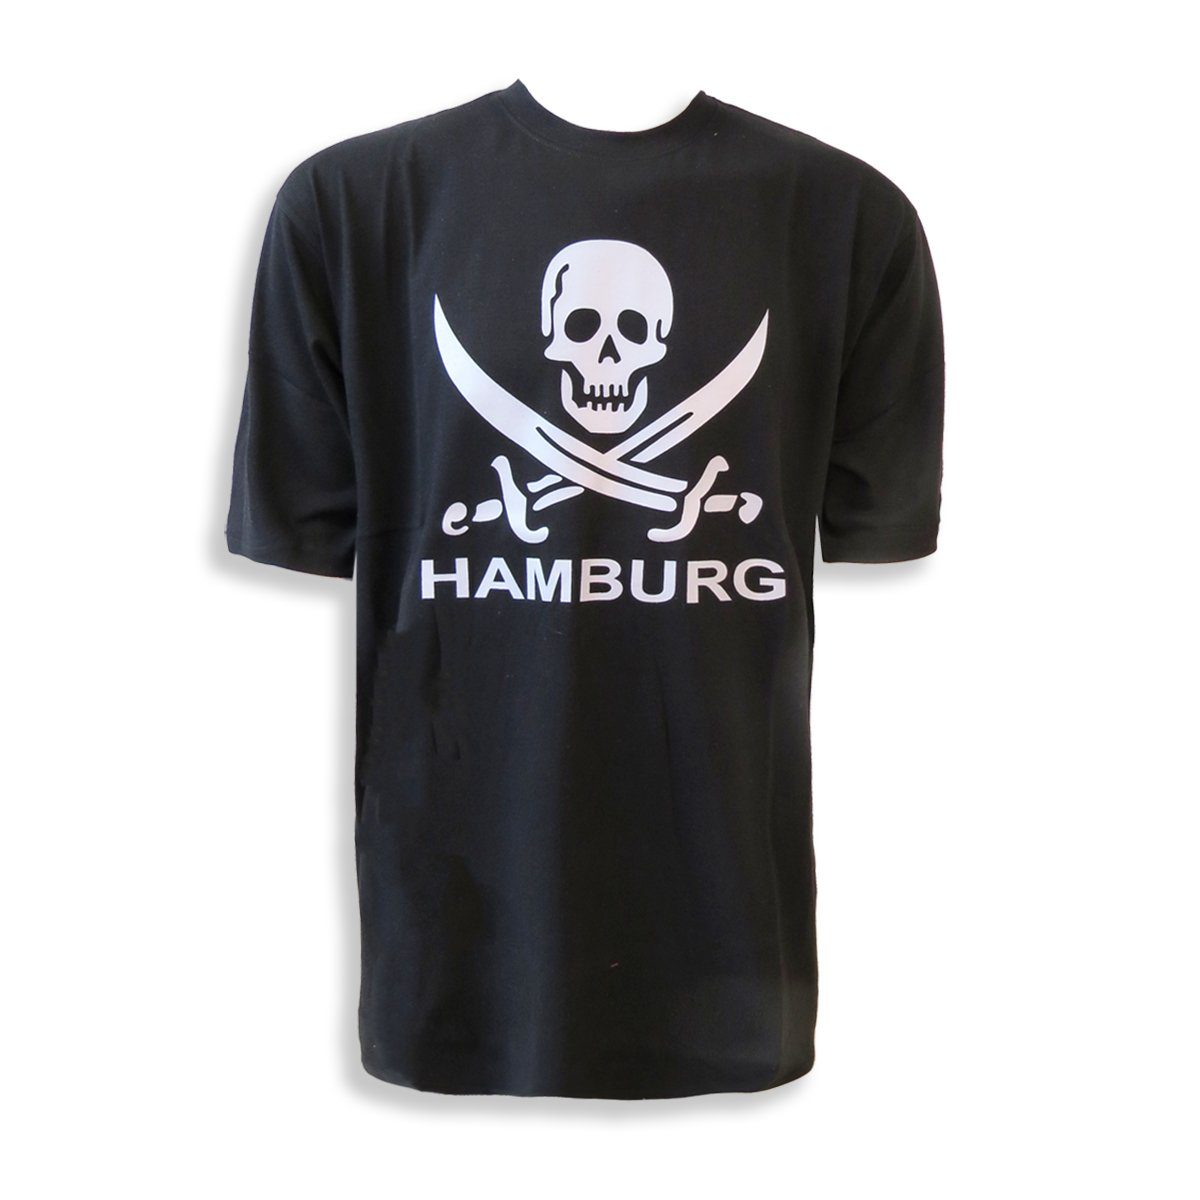 Originelli braun T-Shirt Skull Sonia T-Shirt "Totenkopf Hamburg" Schwert